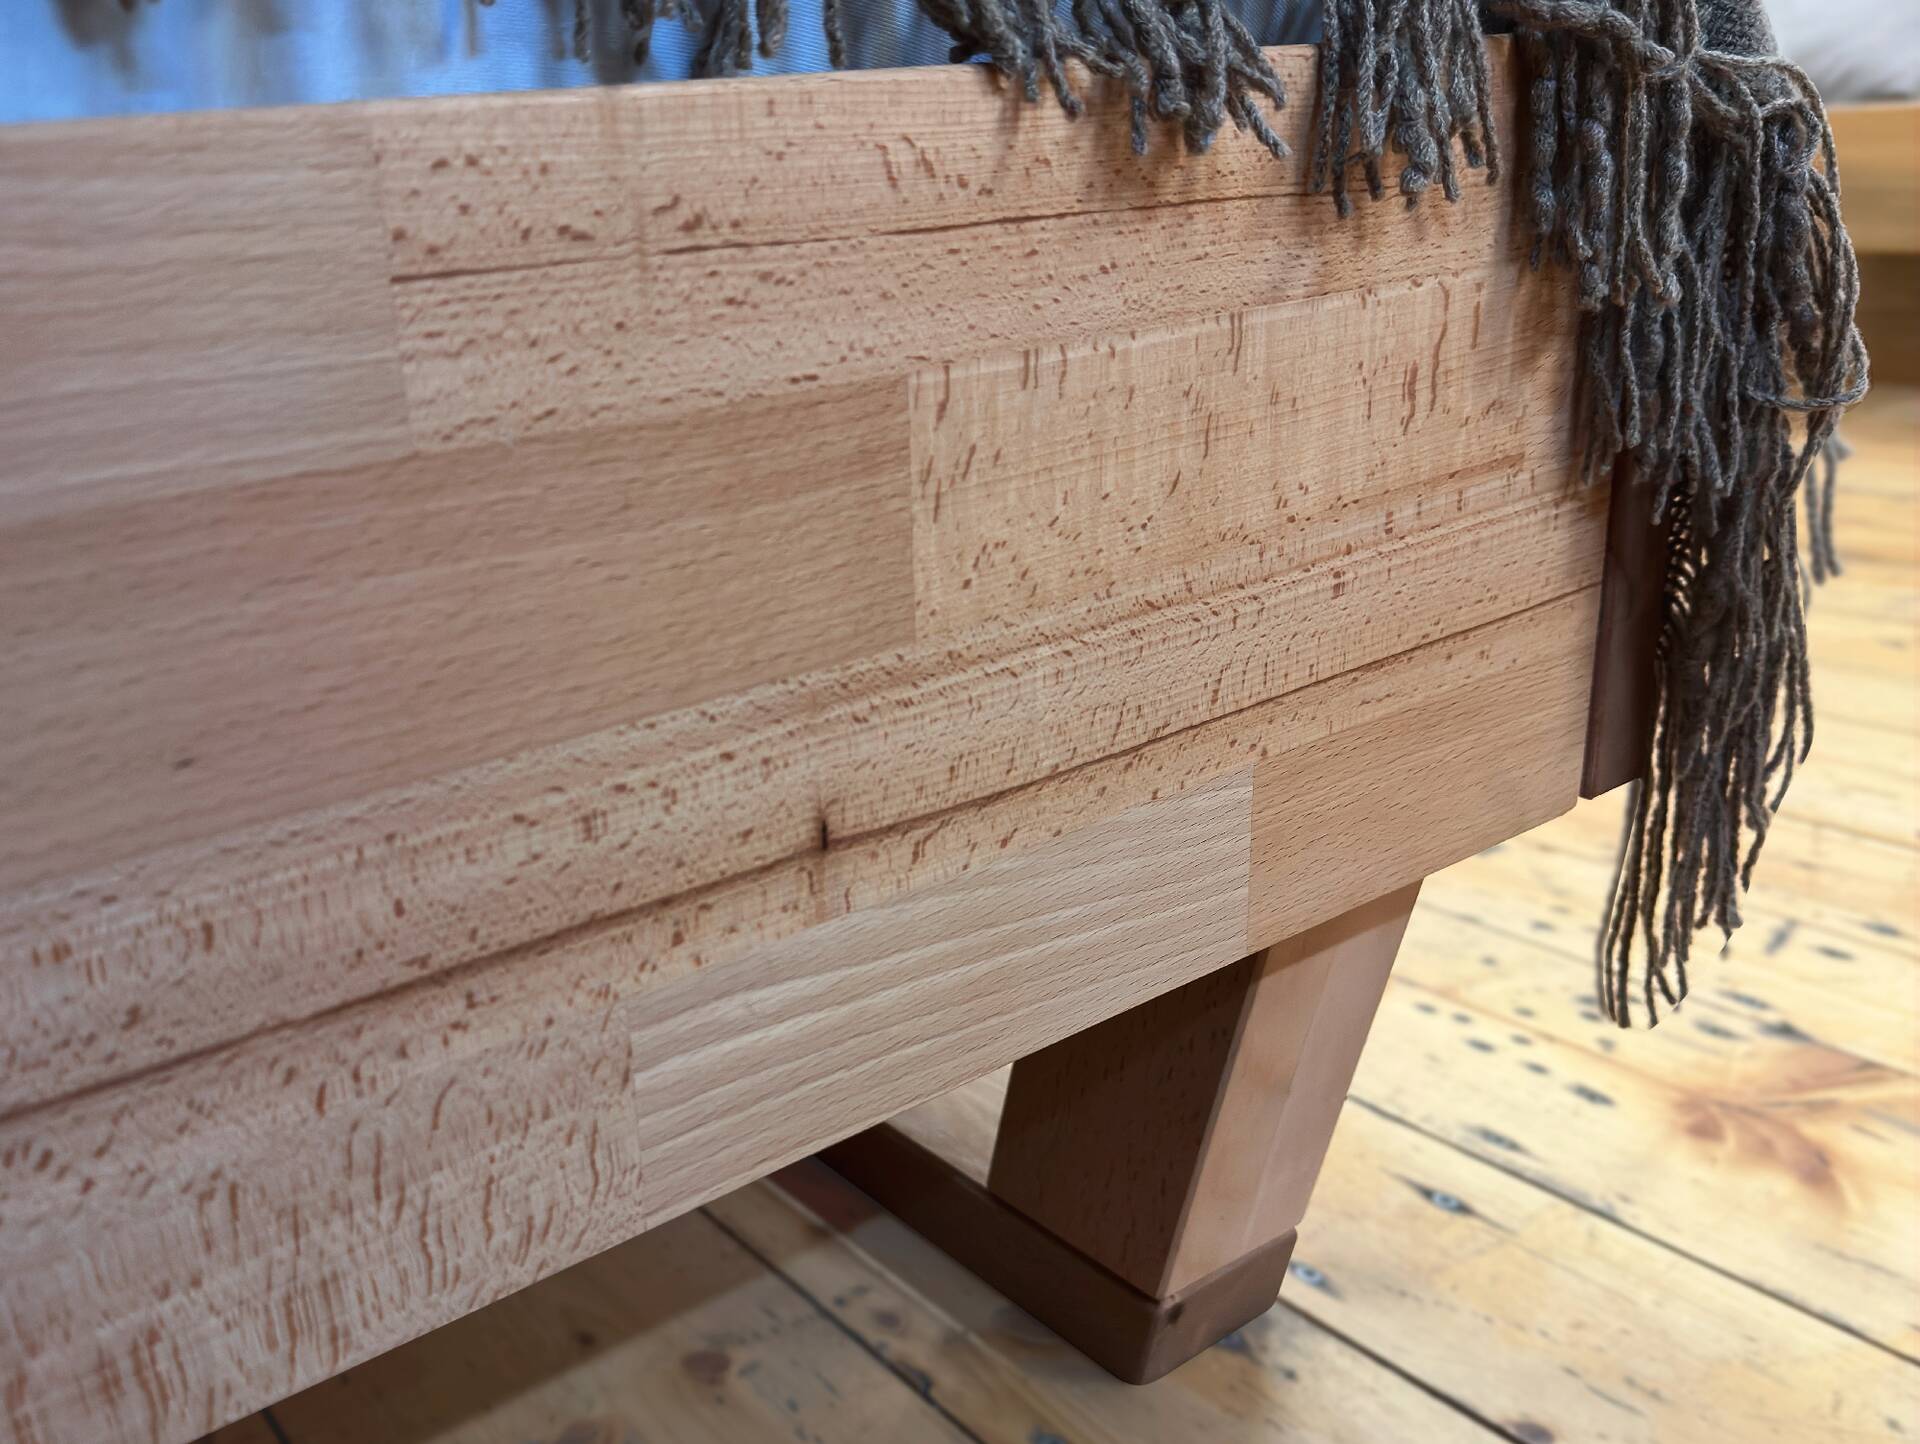 LÖWEN Holz-Kufenbett/Massivholzbett mit Polsterkopfteil 90 x 220 cm | Buche geölt | Kunstleder Braun ohne Steppung